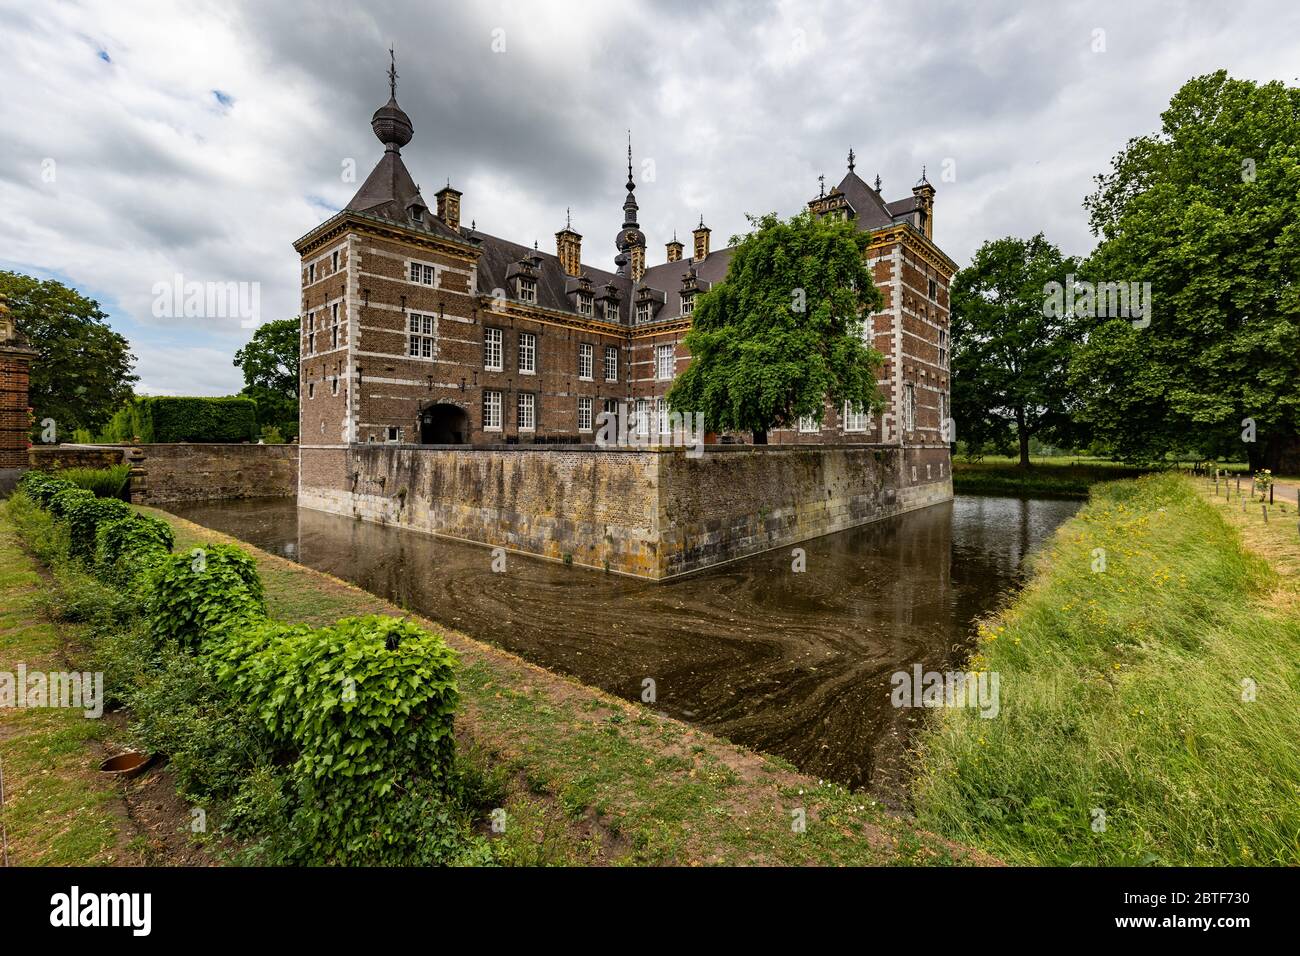 Château Eijsden du XVIIe siècle ce manoir amarré avec un parc public, classé dans les 100 meilleurs sites du patrimoine hollandais et construit au XVIIe siècle Banque D'Images